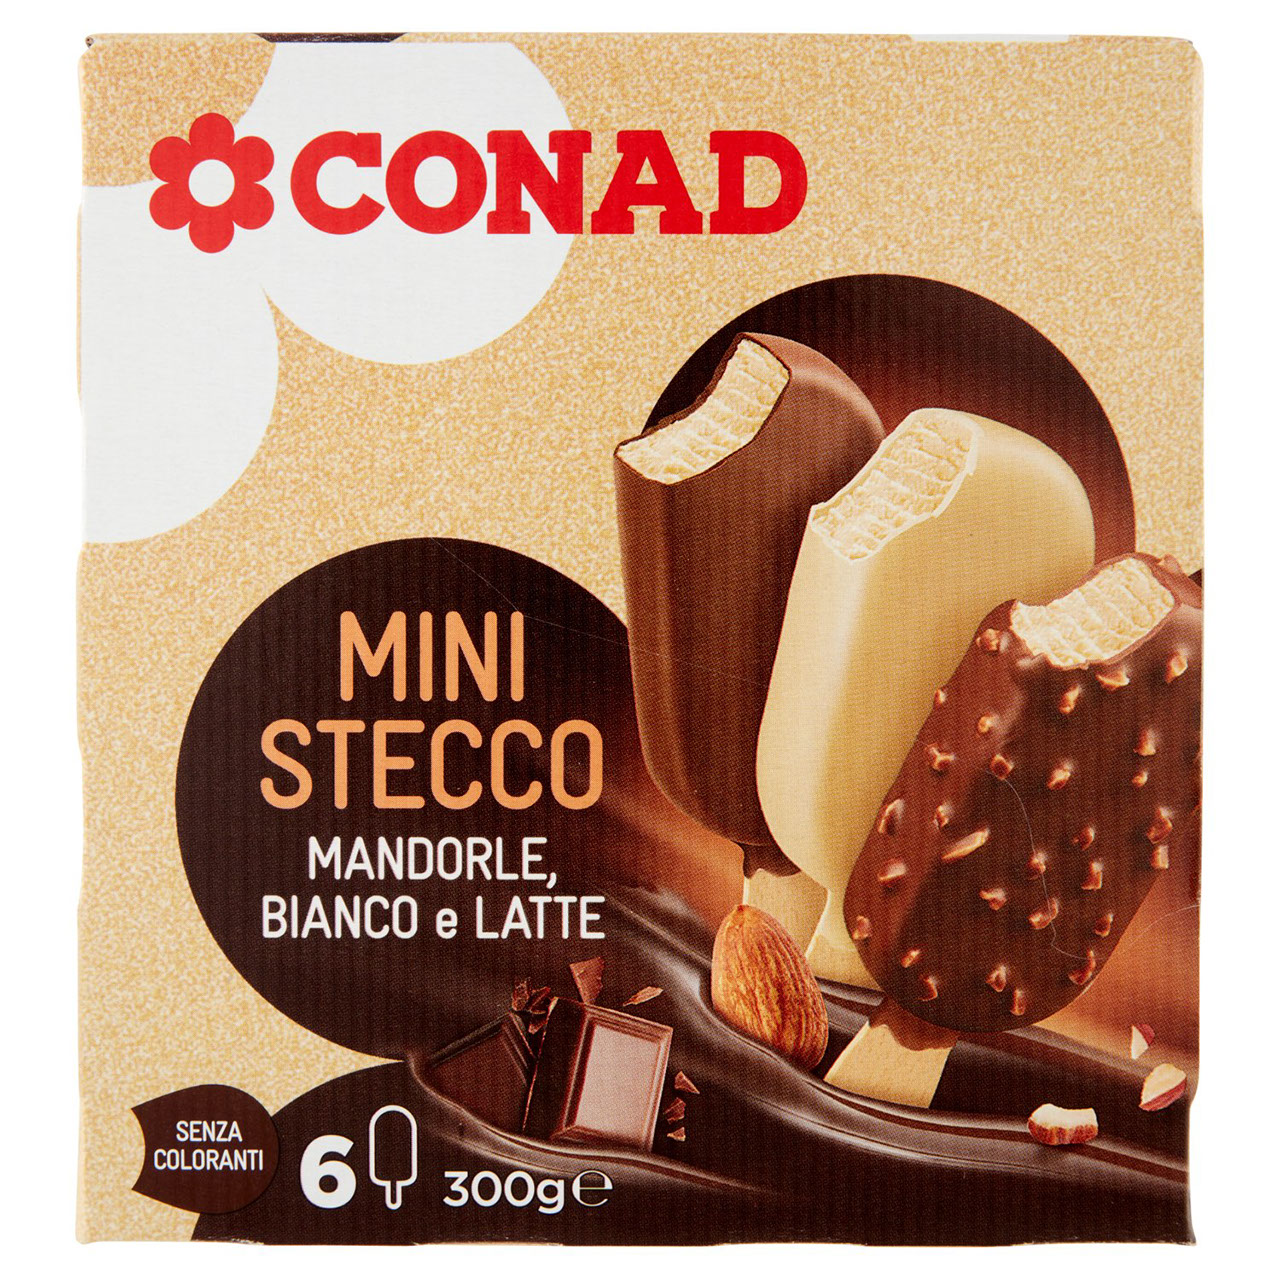 Mini Stecco Mandorle, Bianco e Latte Conad online